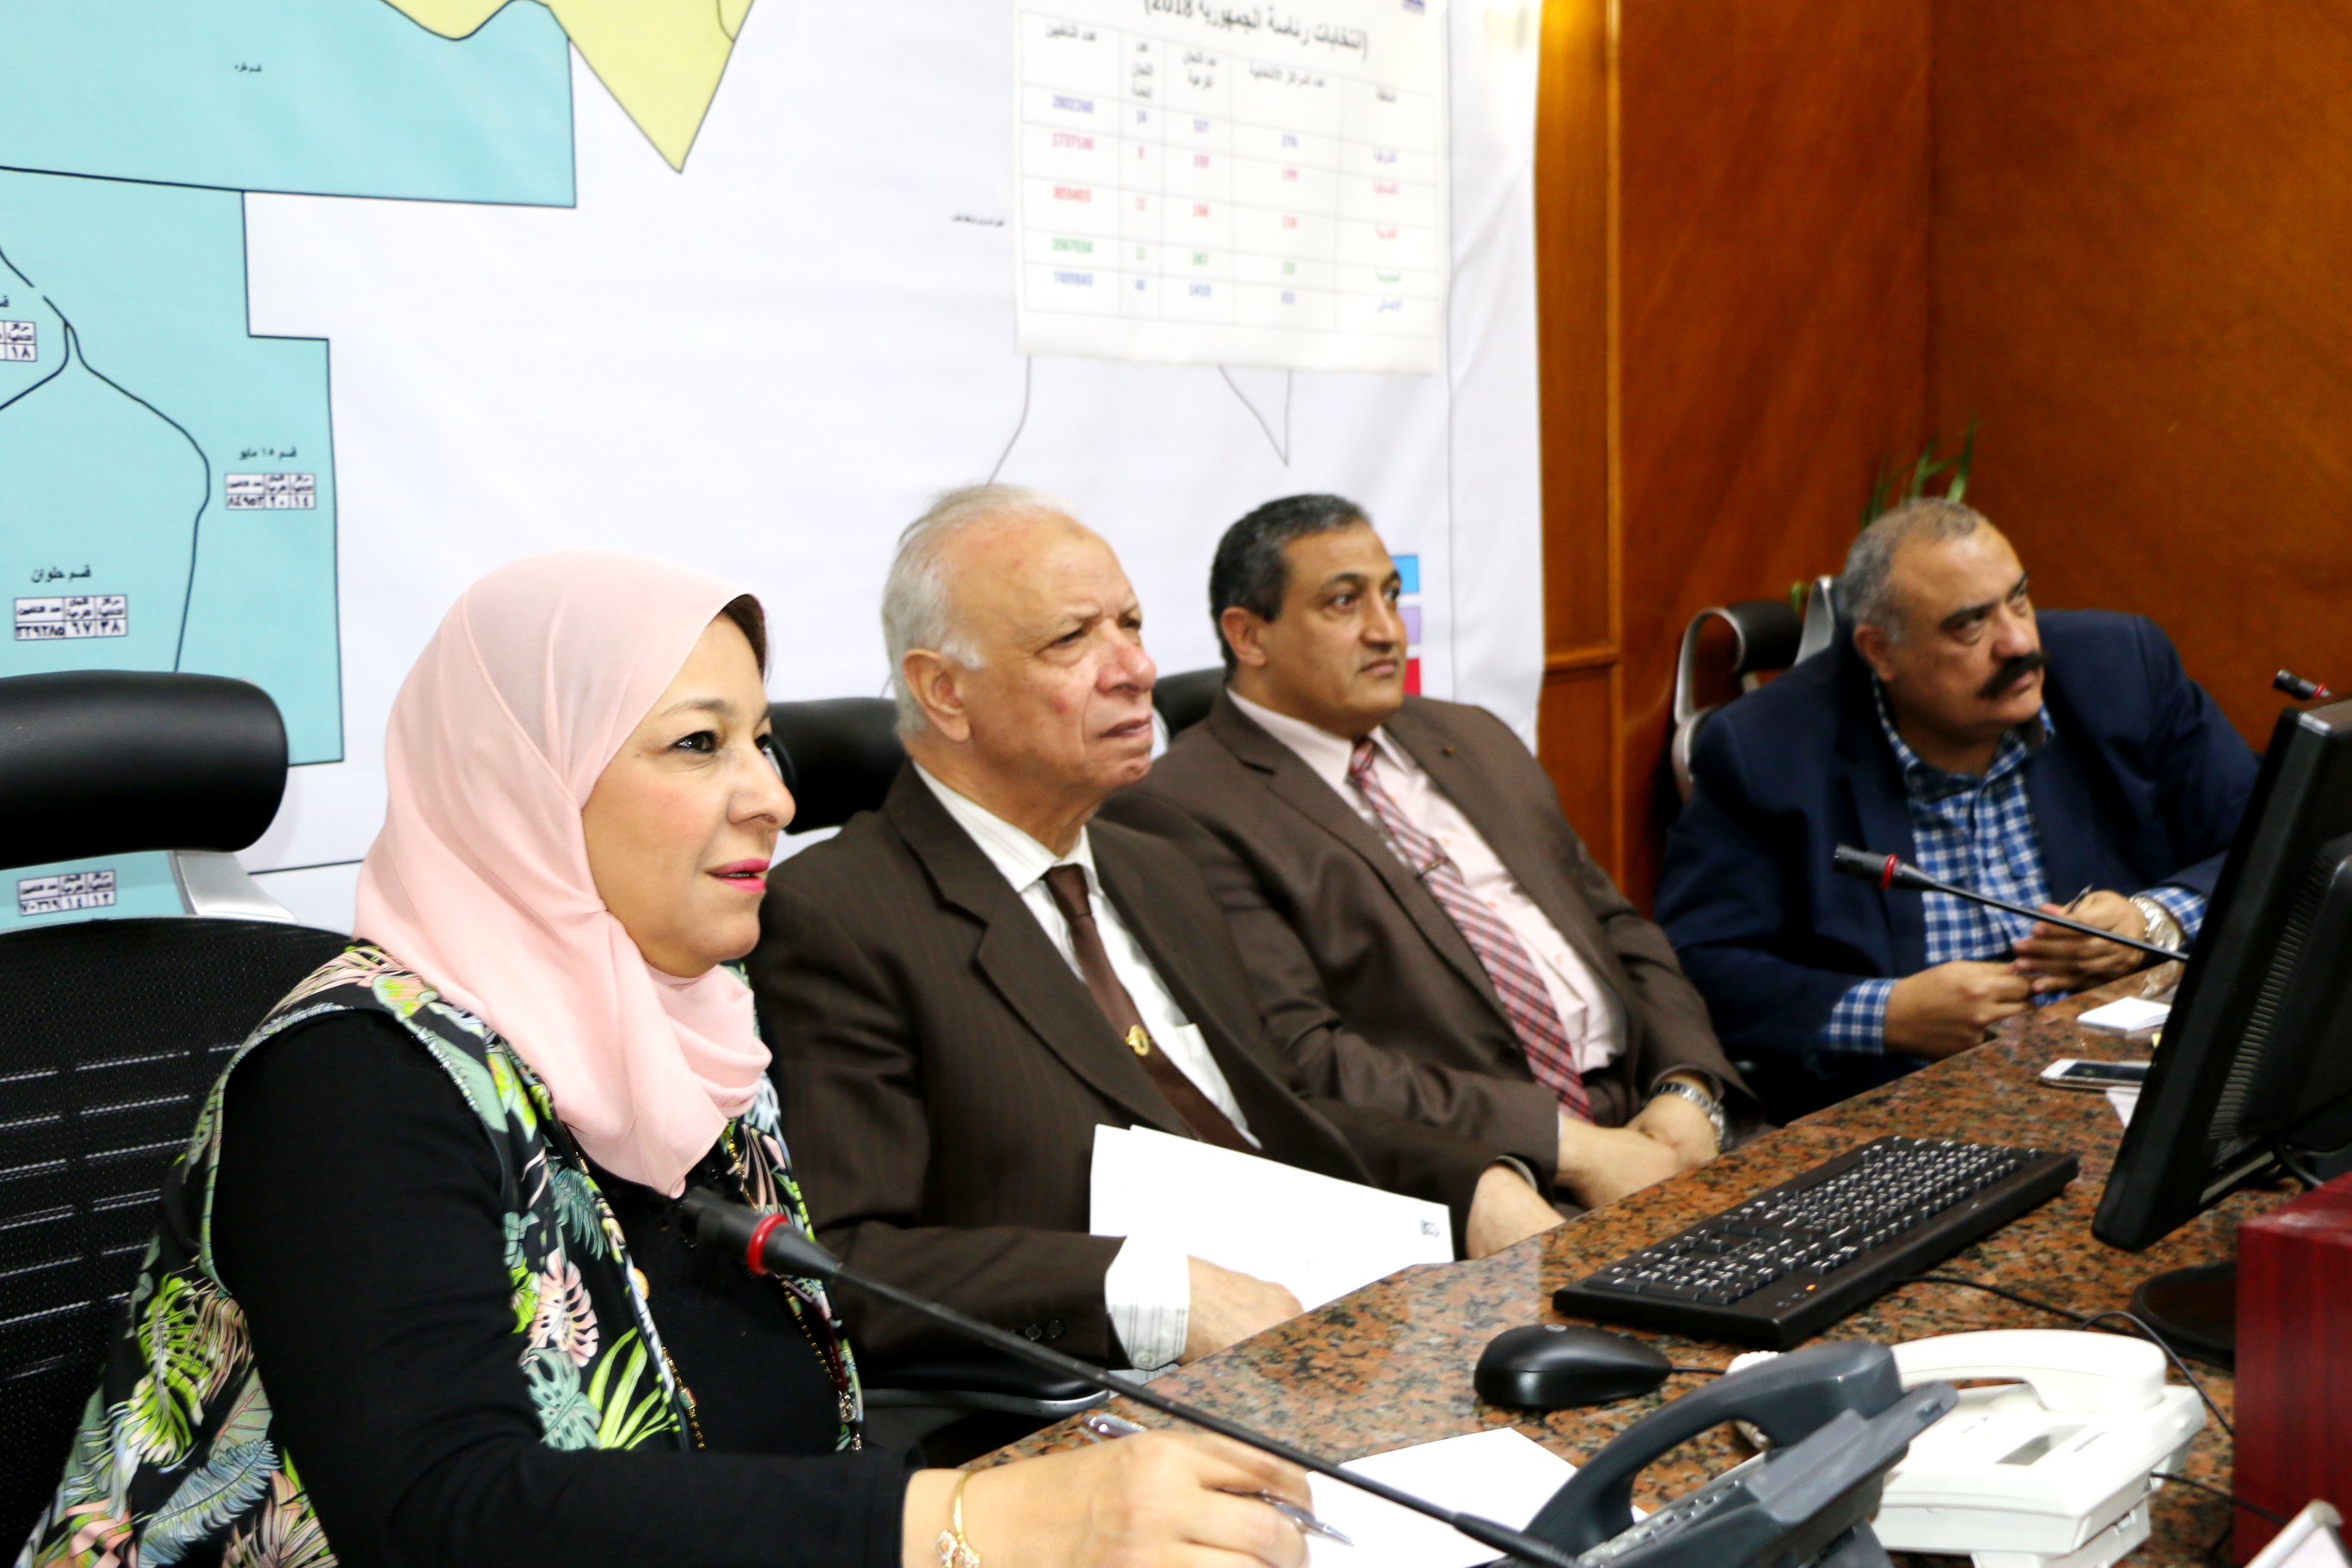 محافظ القاهرة يتابع لجان الانتخابات الرئاسية بالفيديو كونفرانس  (1)